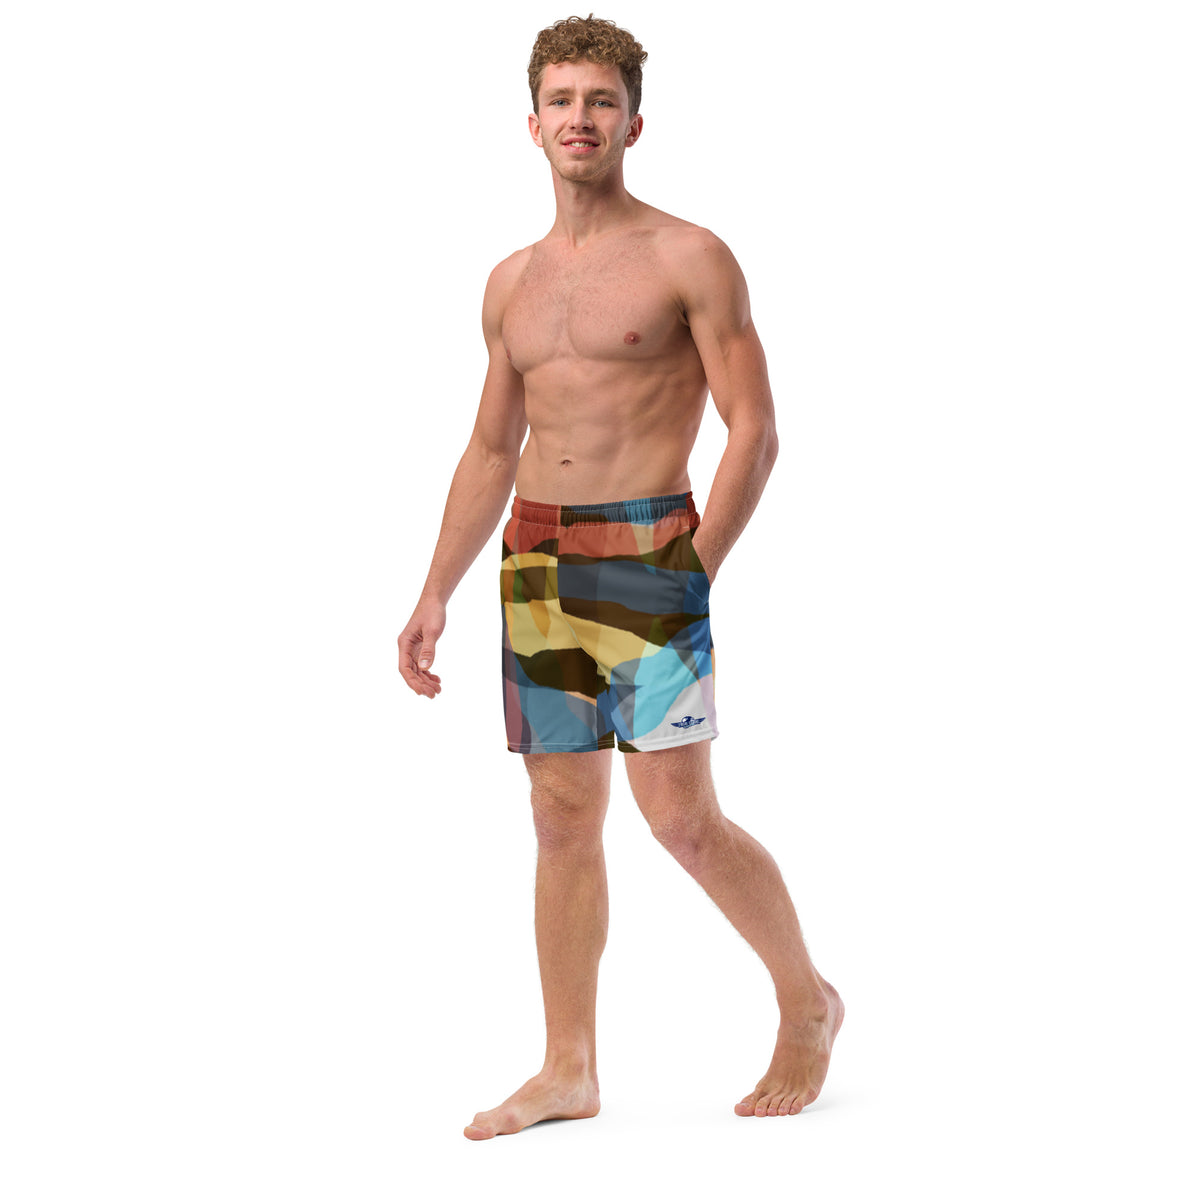 Colourful Flare Men's swim trunks